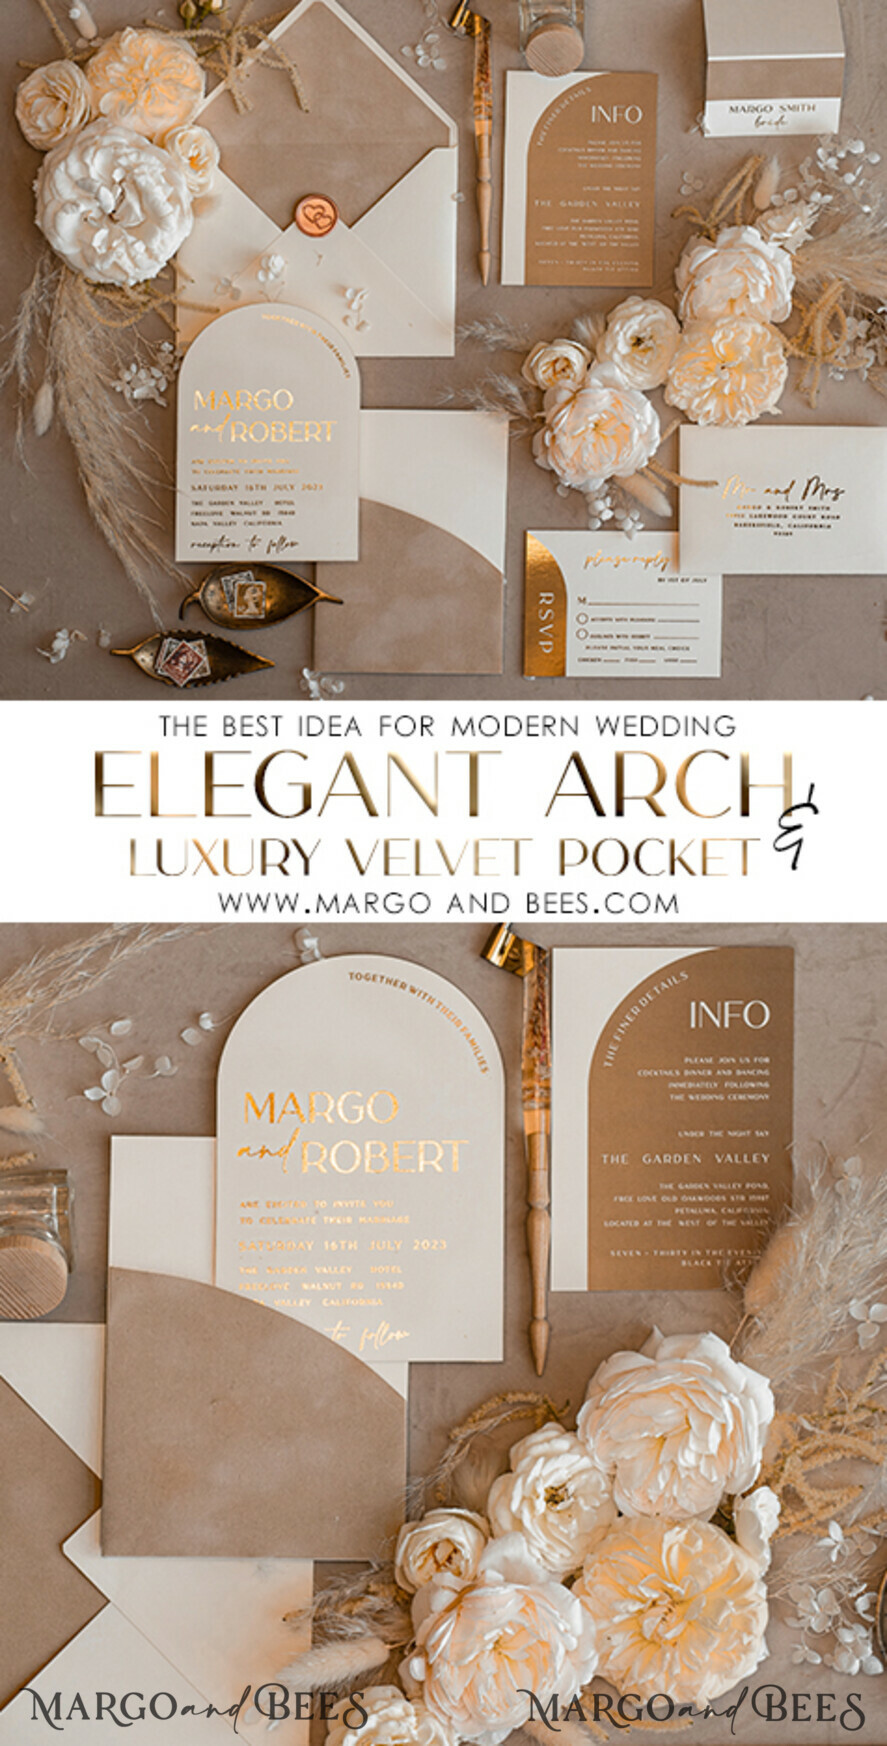 Ivory wedding invitations, maroon lettering, vintage wedding invitations,  ivory wedding cards, ivory wedding stationery, ivory wedding accessories